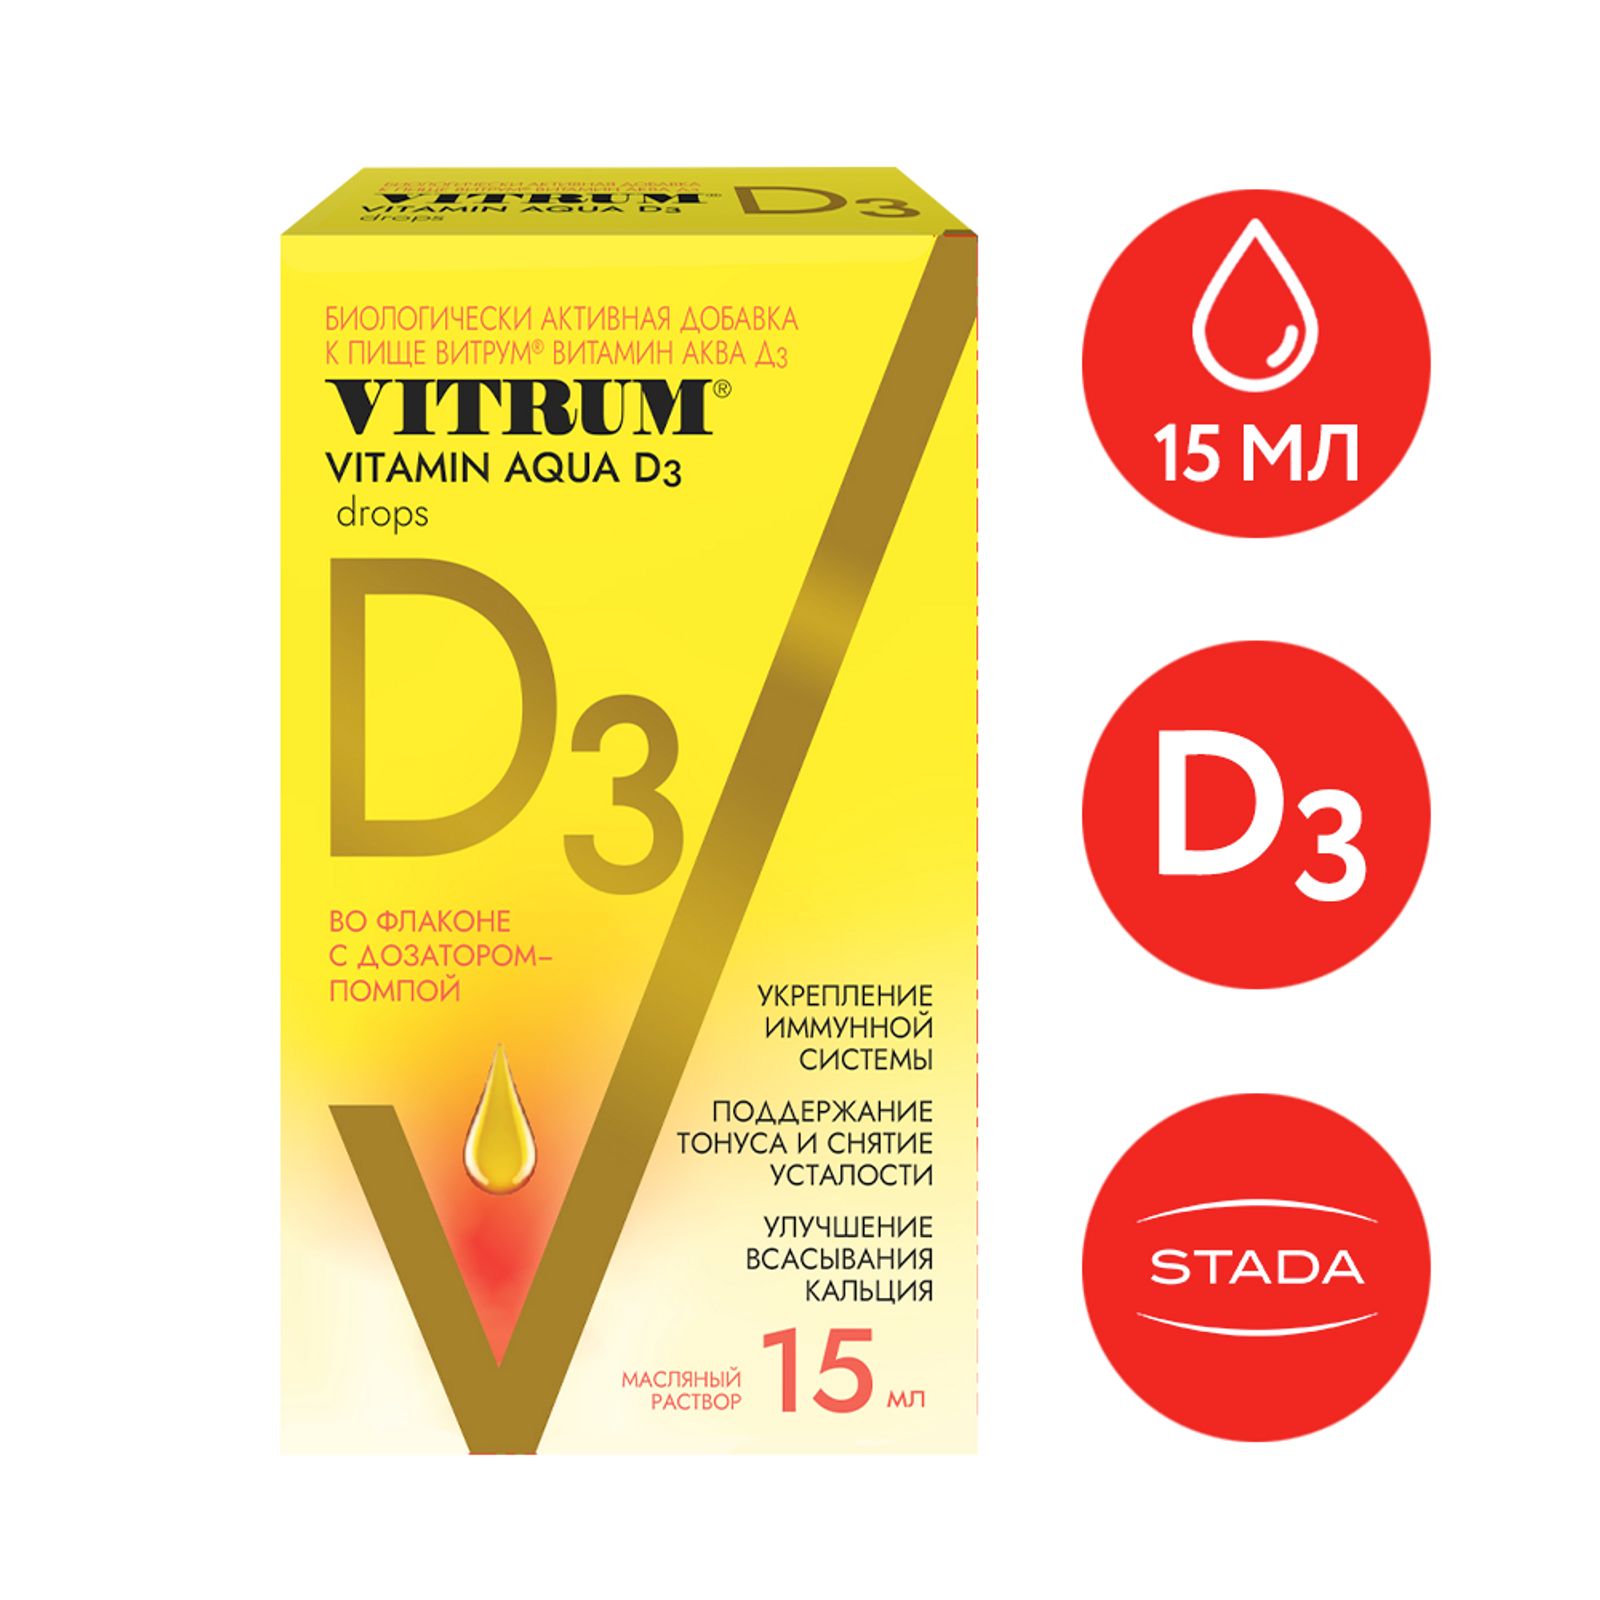 Витрум витамин д3 спрей 400ме 10мл. Витрум витамин д3 Актив. Аква d3. Aqua d3 витамин. D3 active